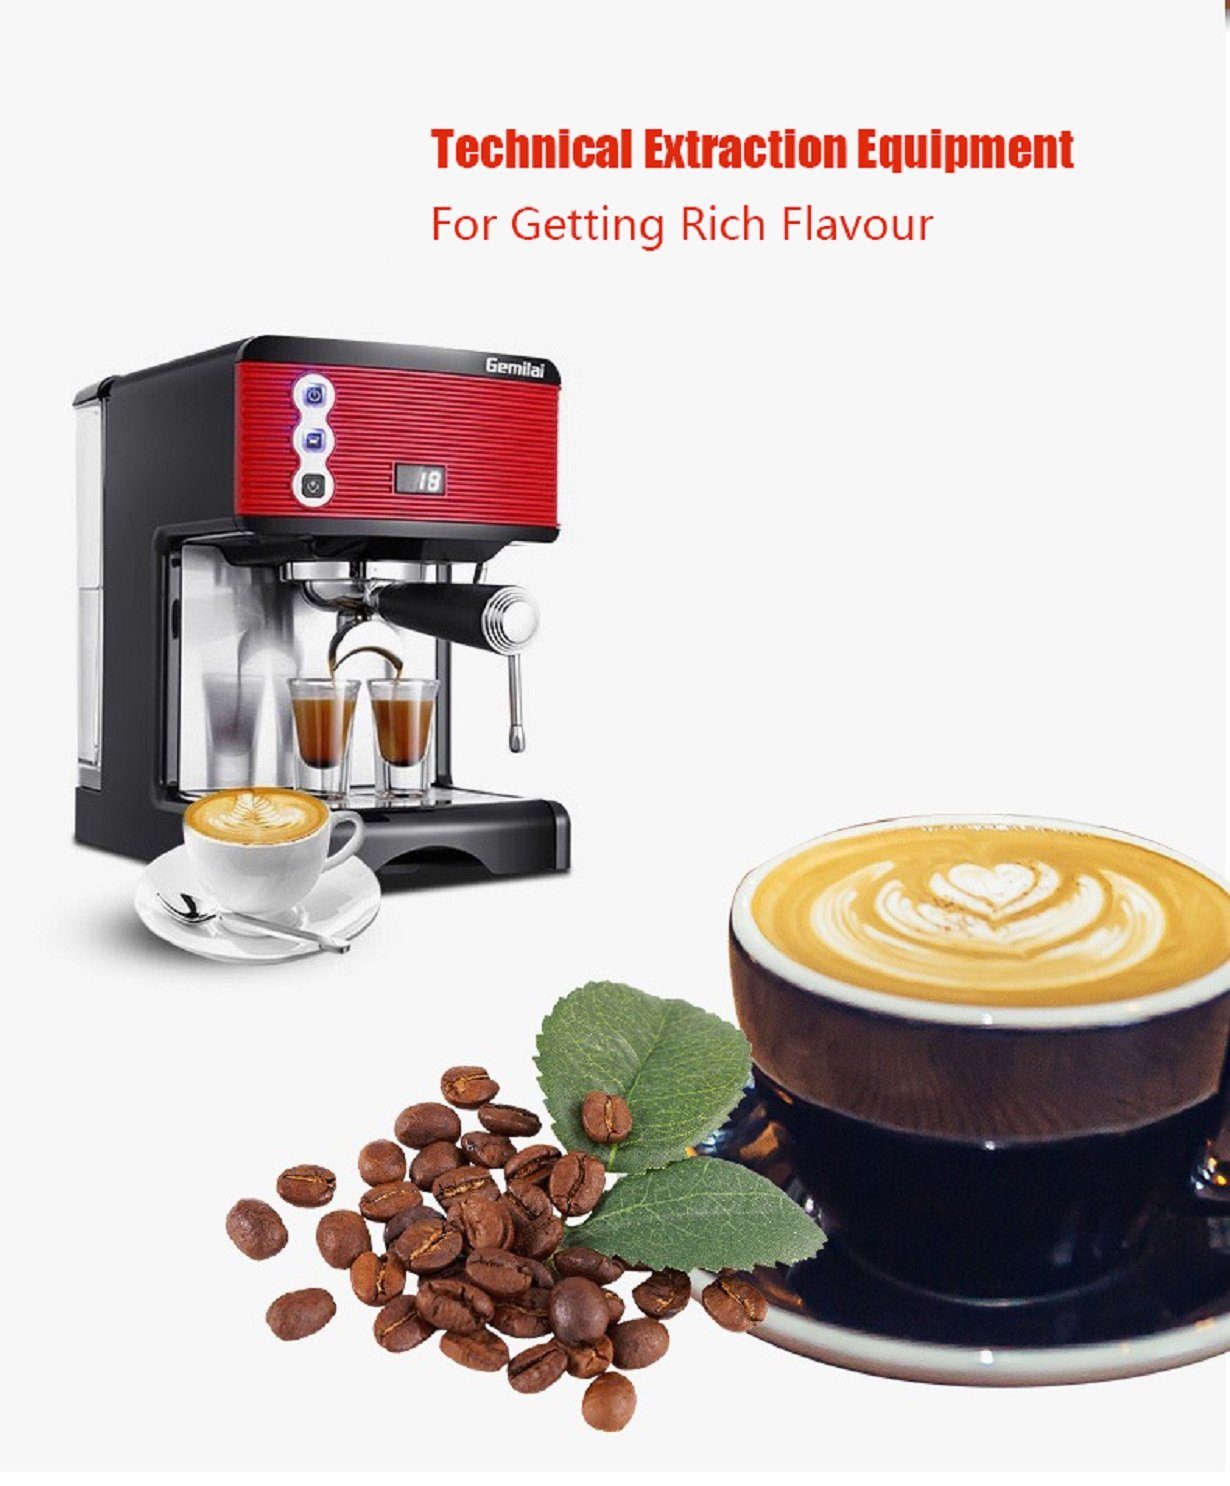 YOSHAN Espressomaschine Machine Semi Espresso 3601 Durchmesser 58mm GM, automatische Korbfilter